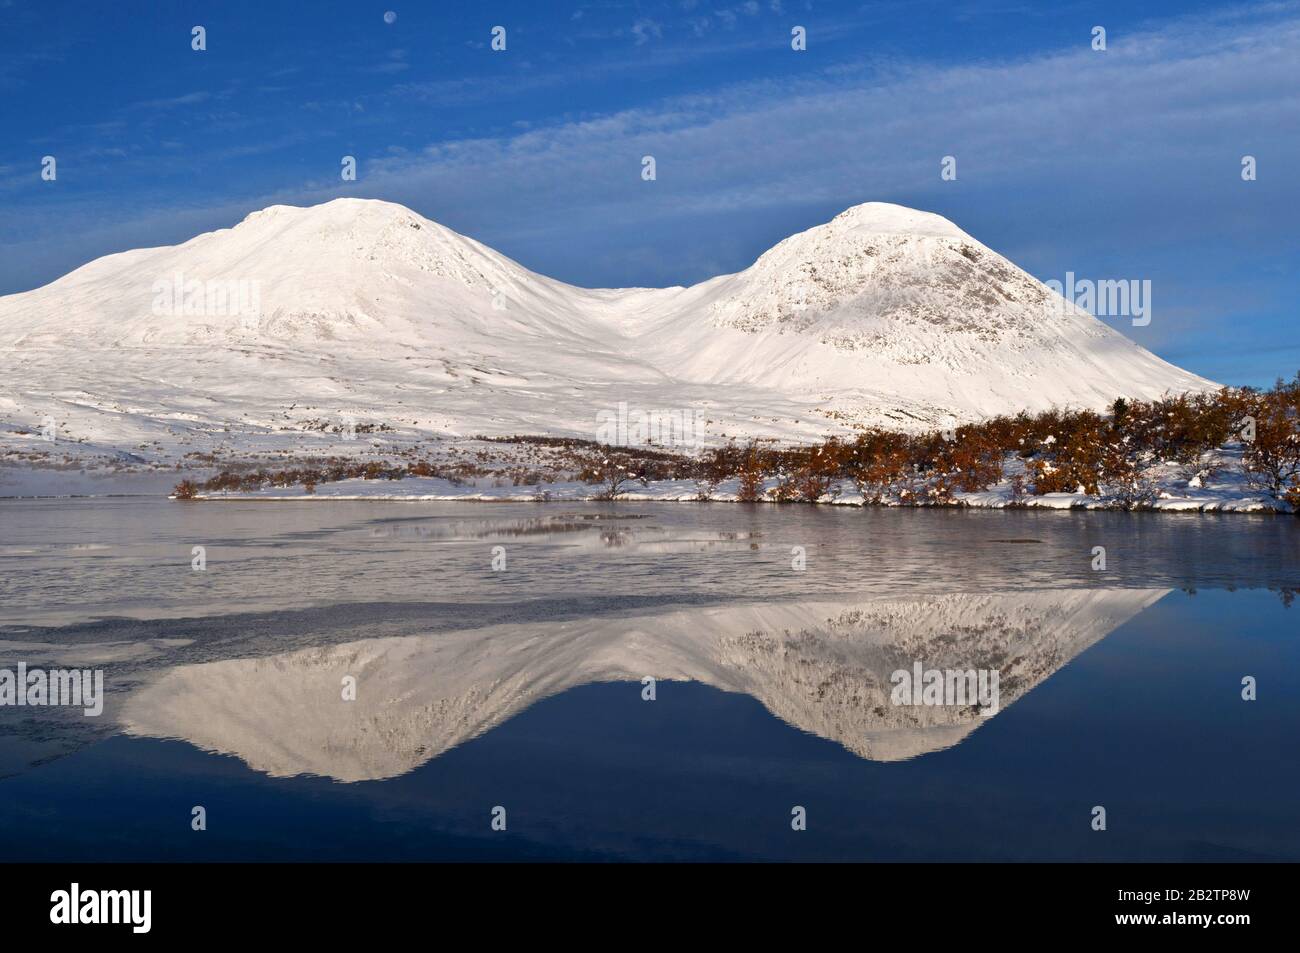 Berggipfel spiegeln sich in einem See im Tal Doeralen, Rondane Nationalpark, Oppland Fylke, Norwegen, September 2010 Stock Photo